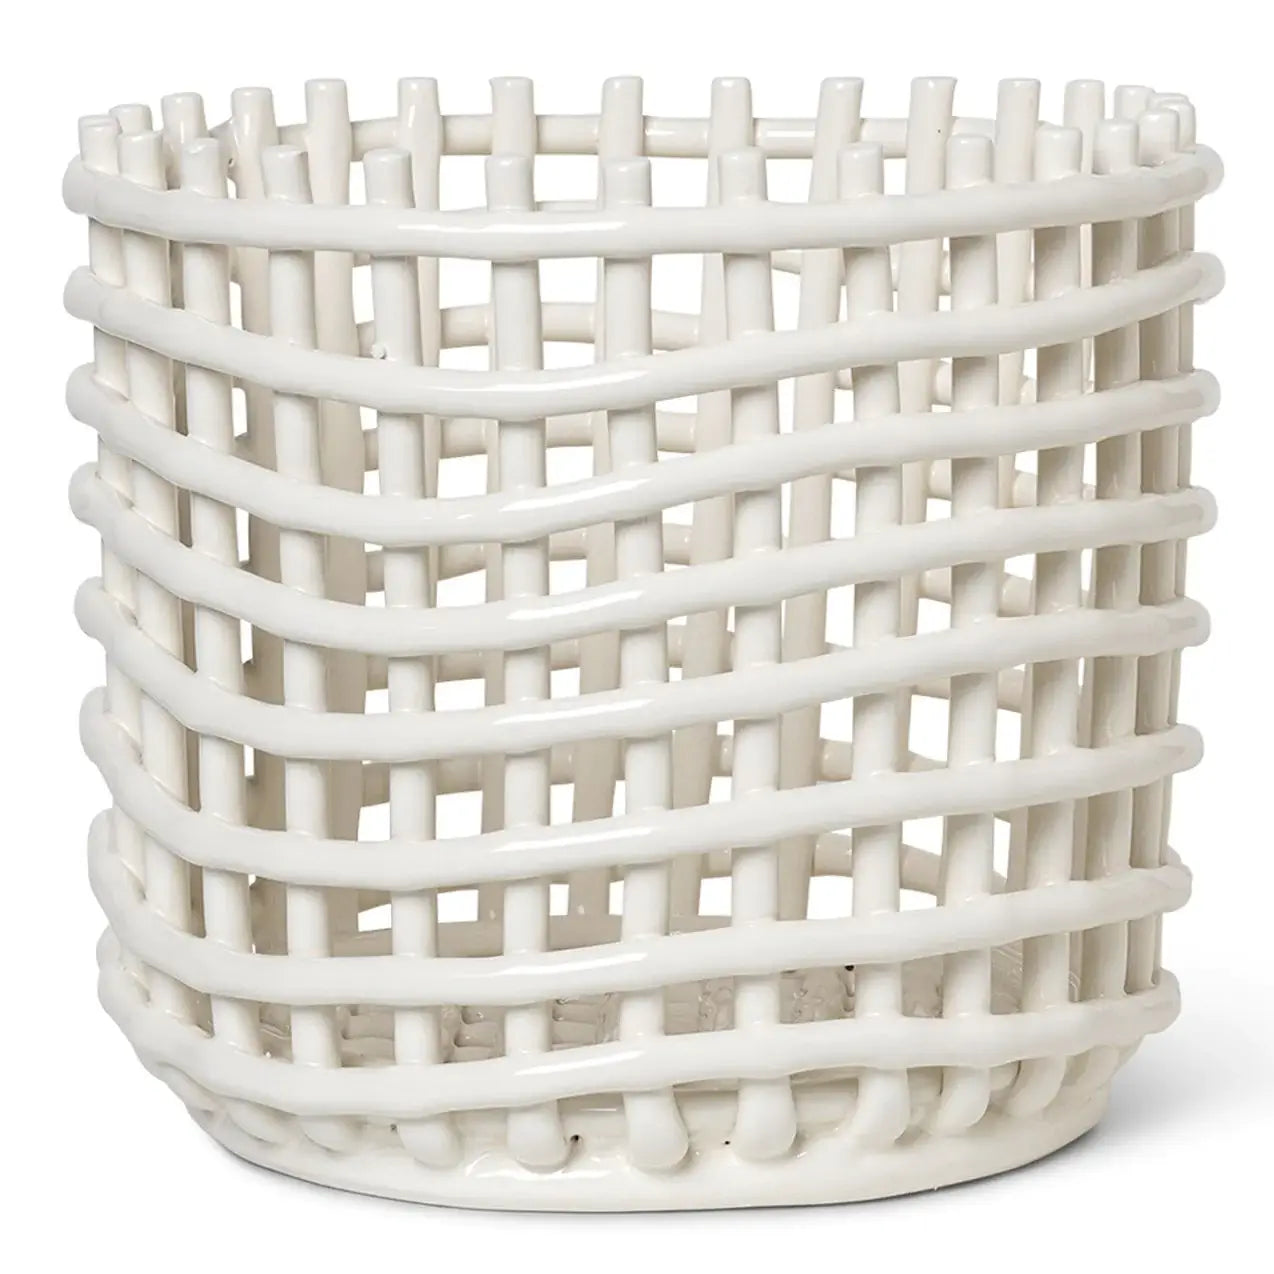 Ferm Living Ceramic Large Basket